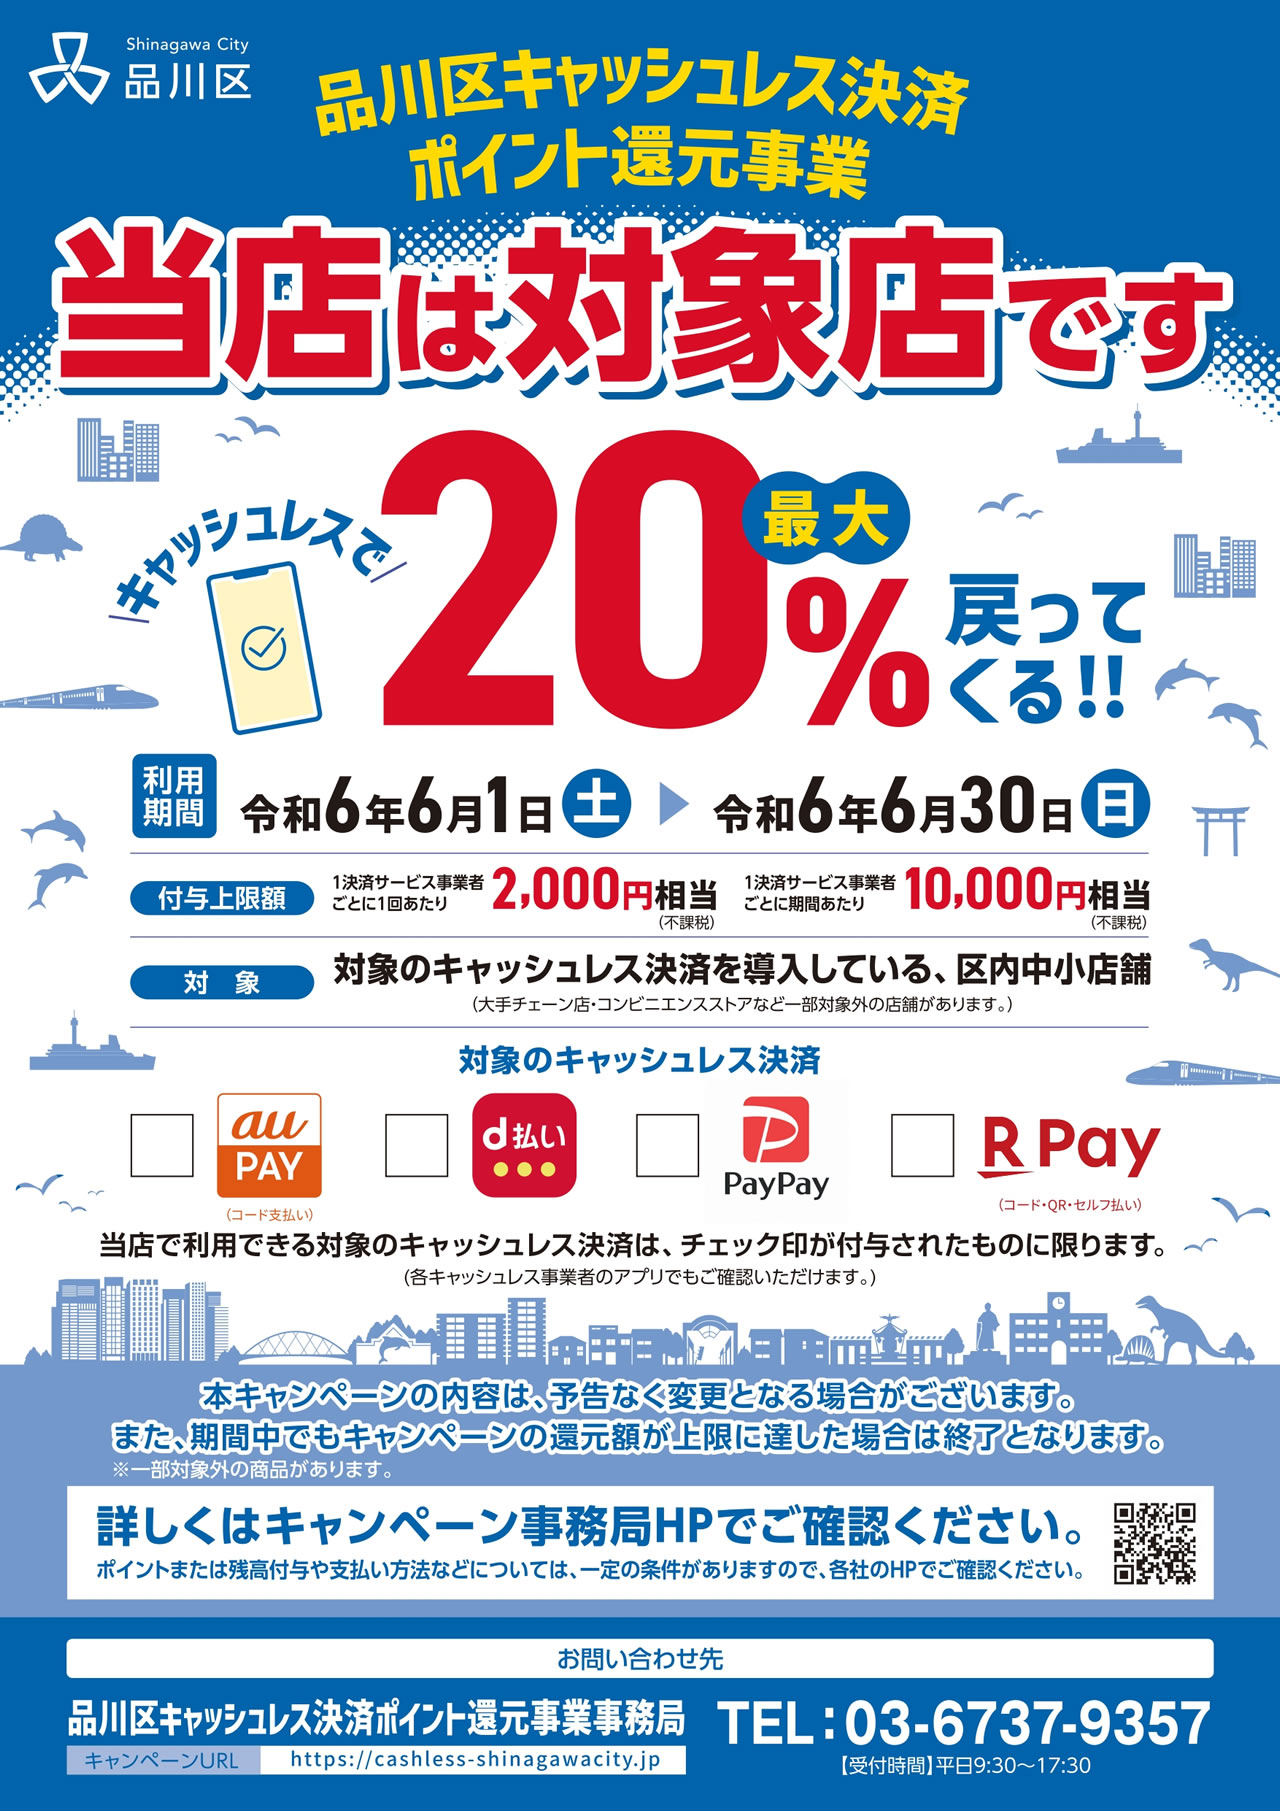 東京都品川区、キャッシュレス決済で最大20％還元キャンペーンを6月1日から実施へ。付与上限額は10,000円